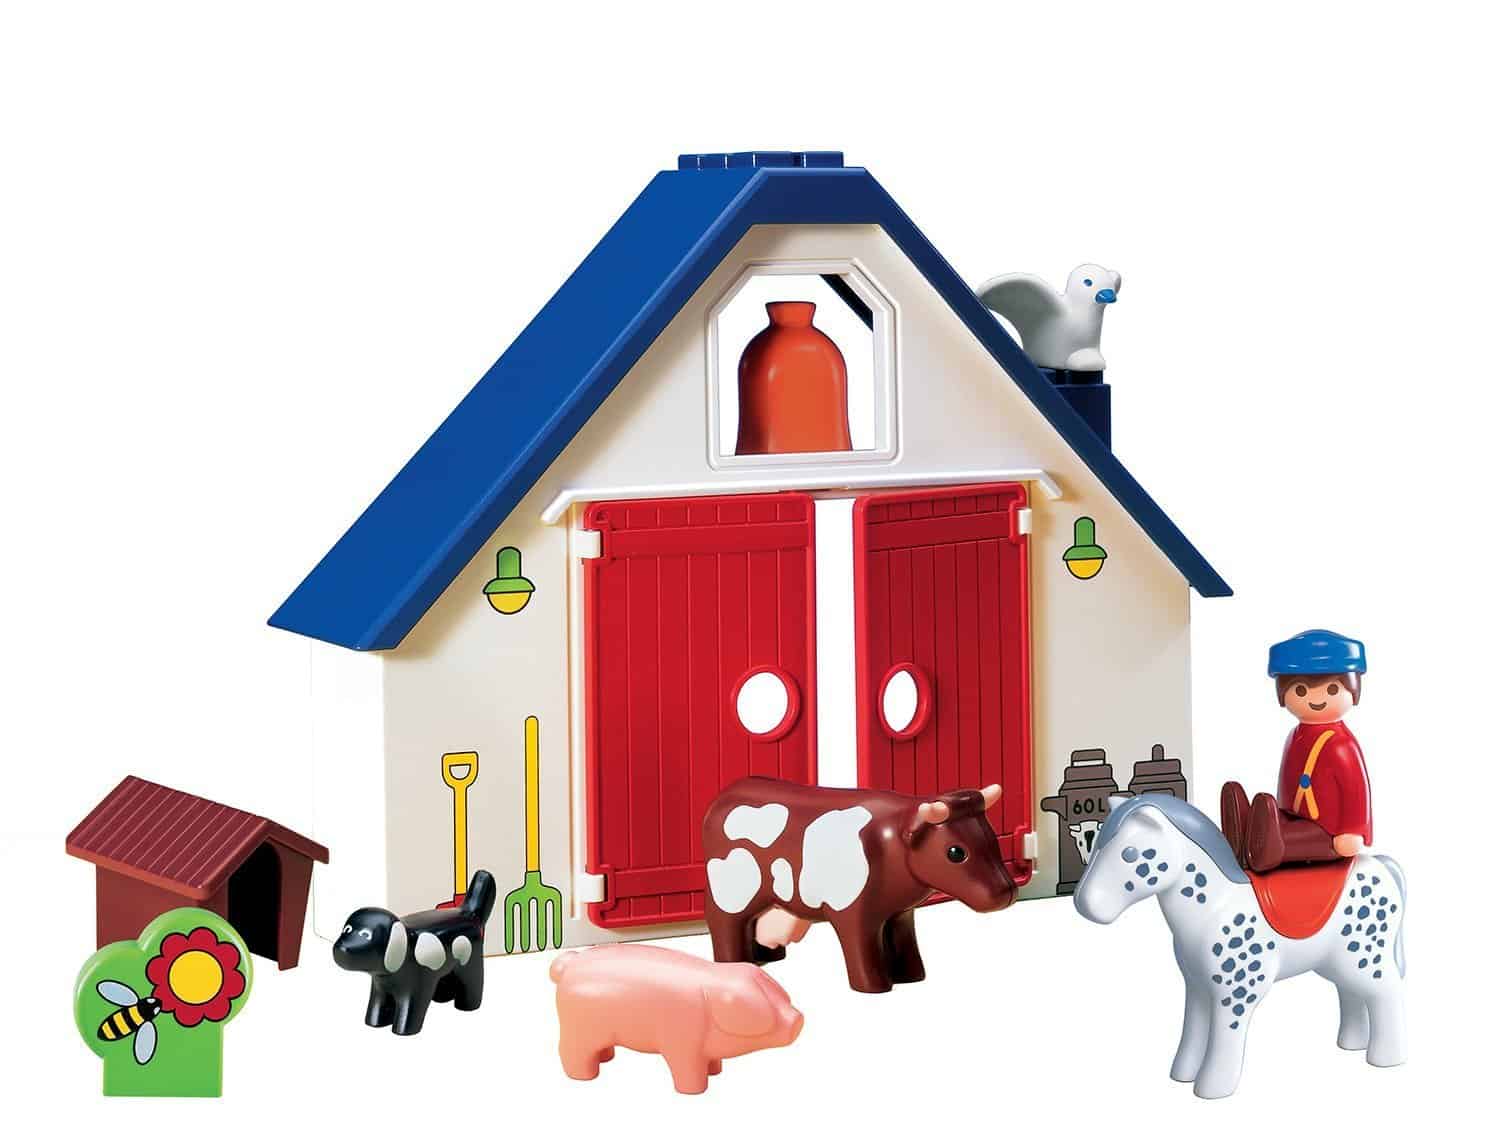 playmobil farm